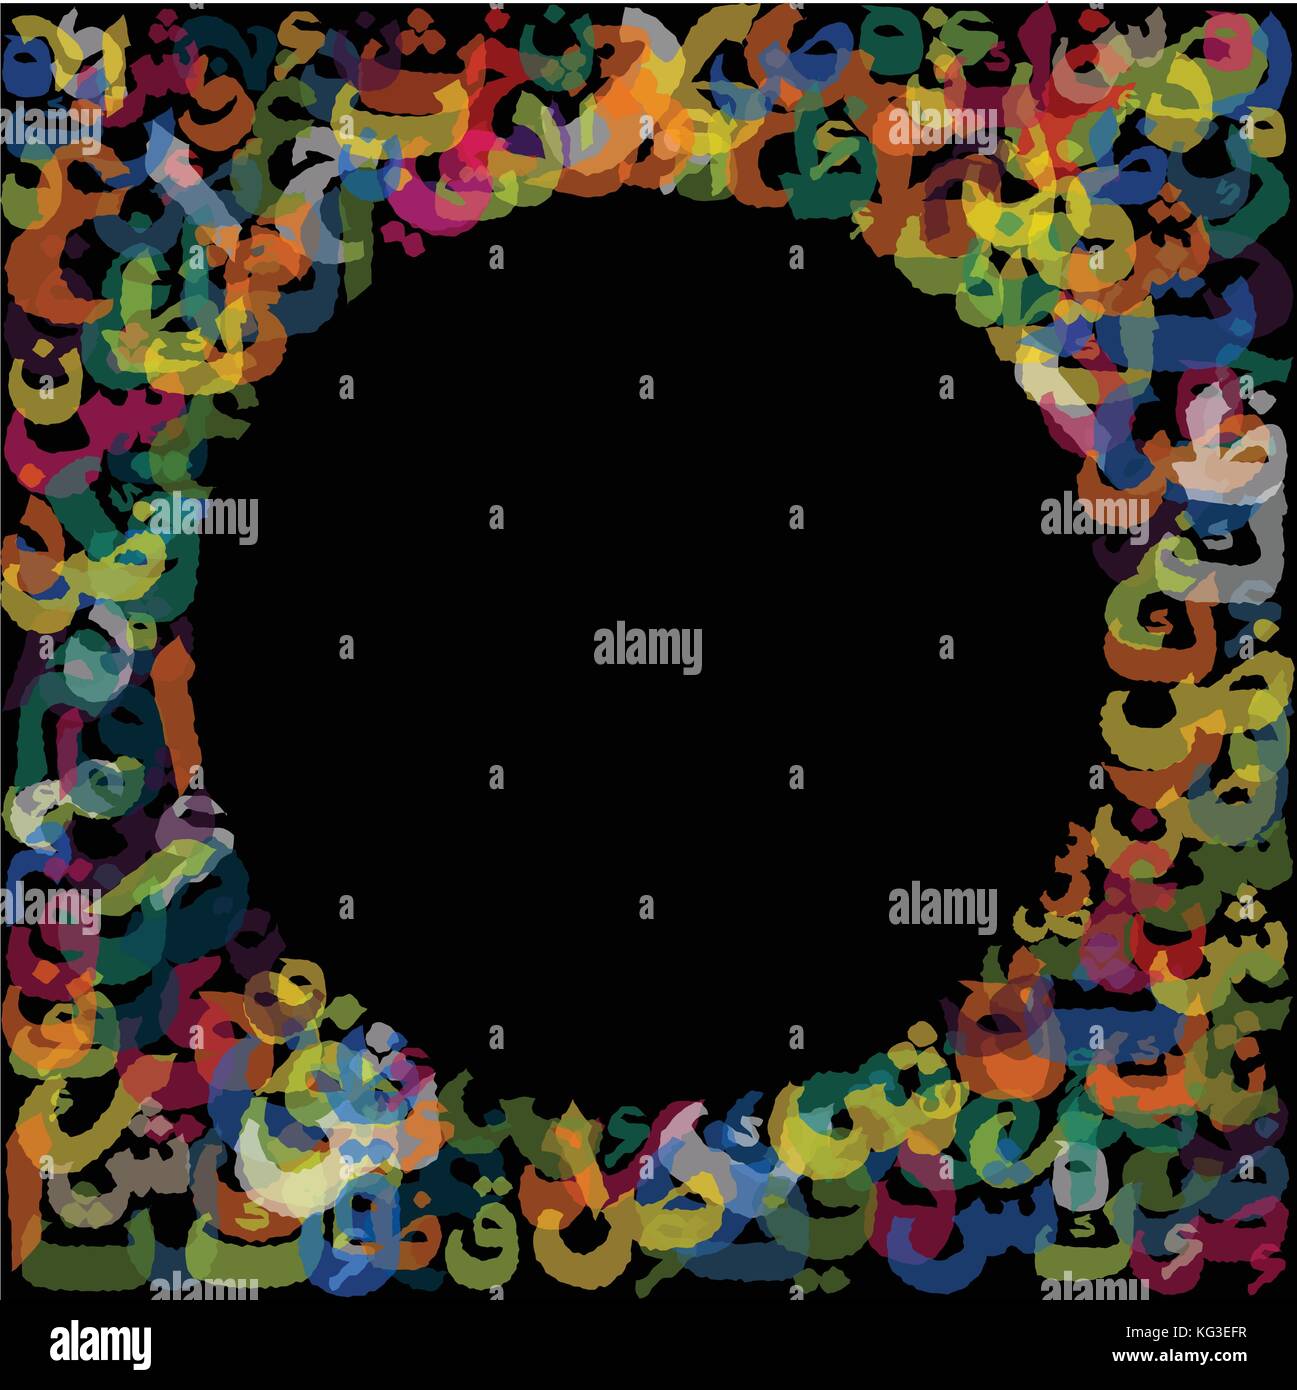 Bunte abstrakt Hintergrund arabische Alphabet mit Kreis Raum, arabischen Buchstaben ohne besondere Bedeutung. Farbenfrohe auf schwarzem Hintergrund - Vektor backgro Stock Vektor